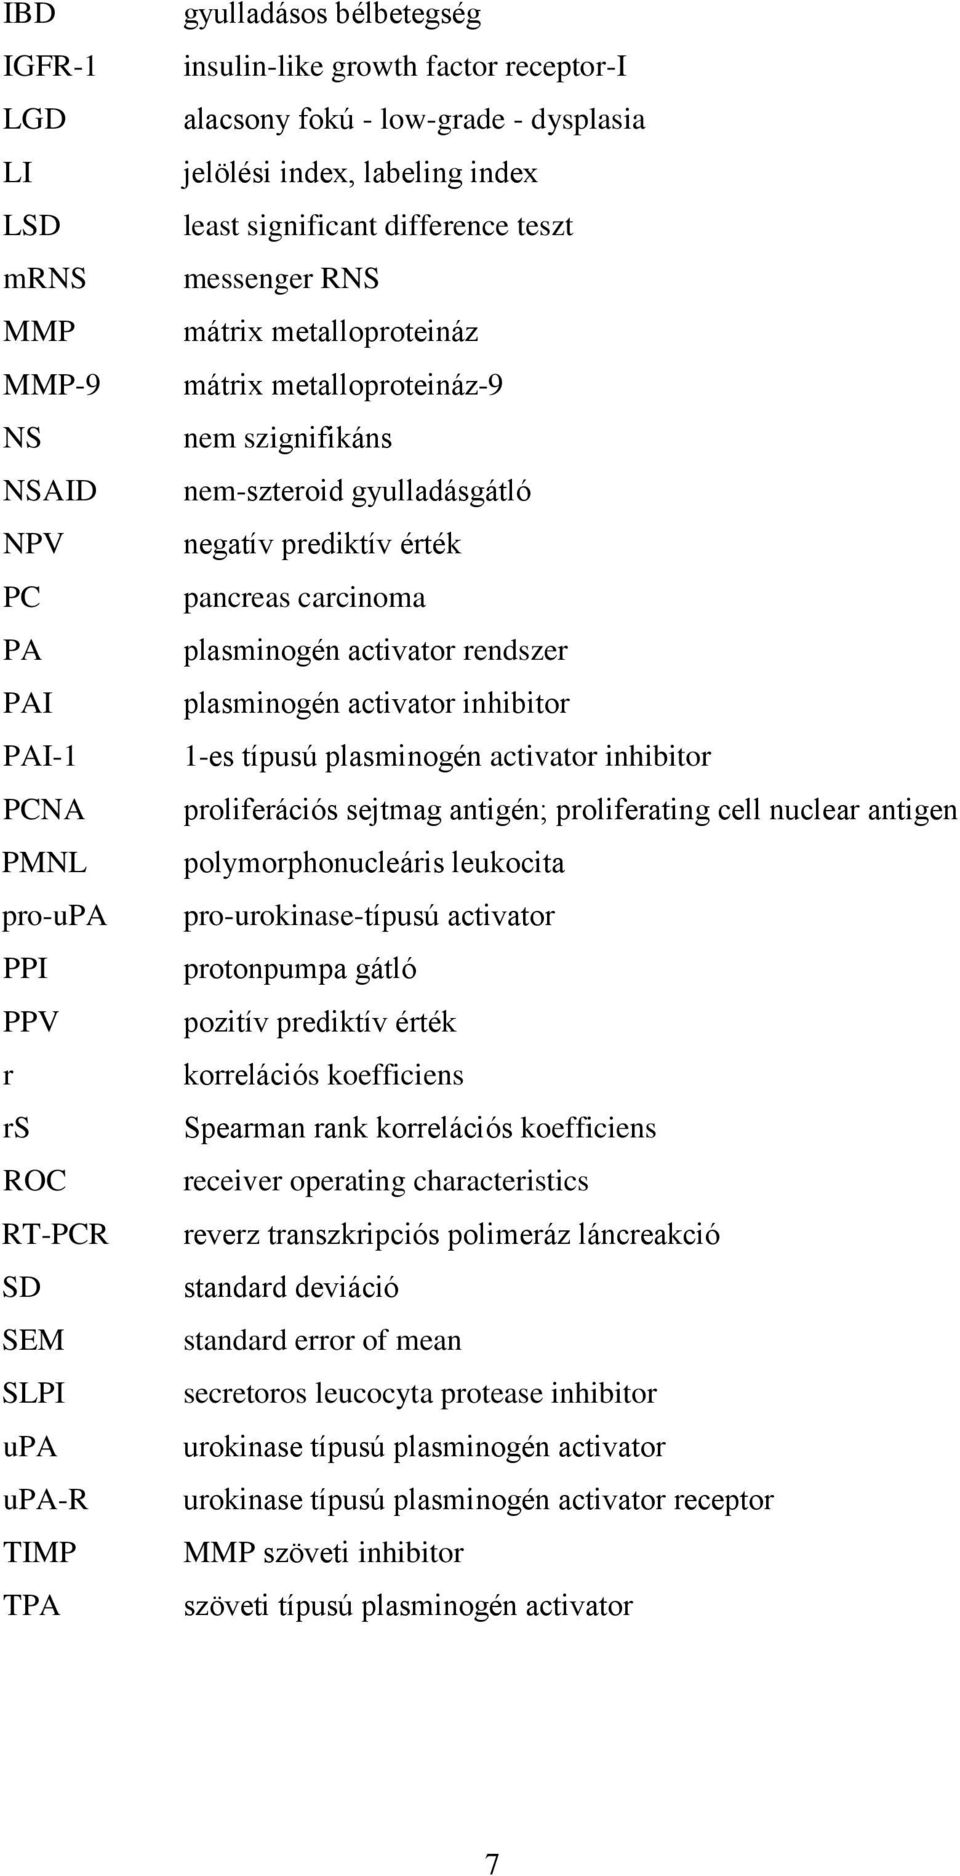 nem-szteroid gyulladásgátló negatív prediktív érték pancreas carcinoma plasminogén activator rendszer plasminogén activator inhibitor 1-es típusú plasminogén activator inhibitor proliferációs sejtmag